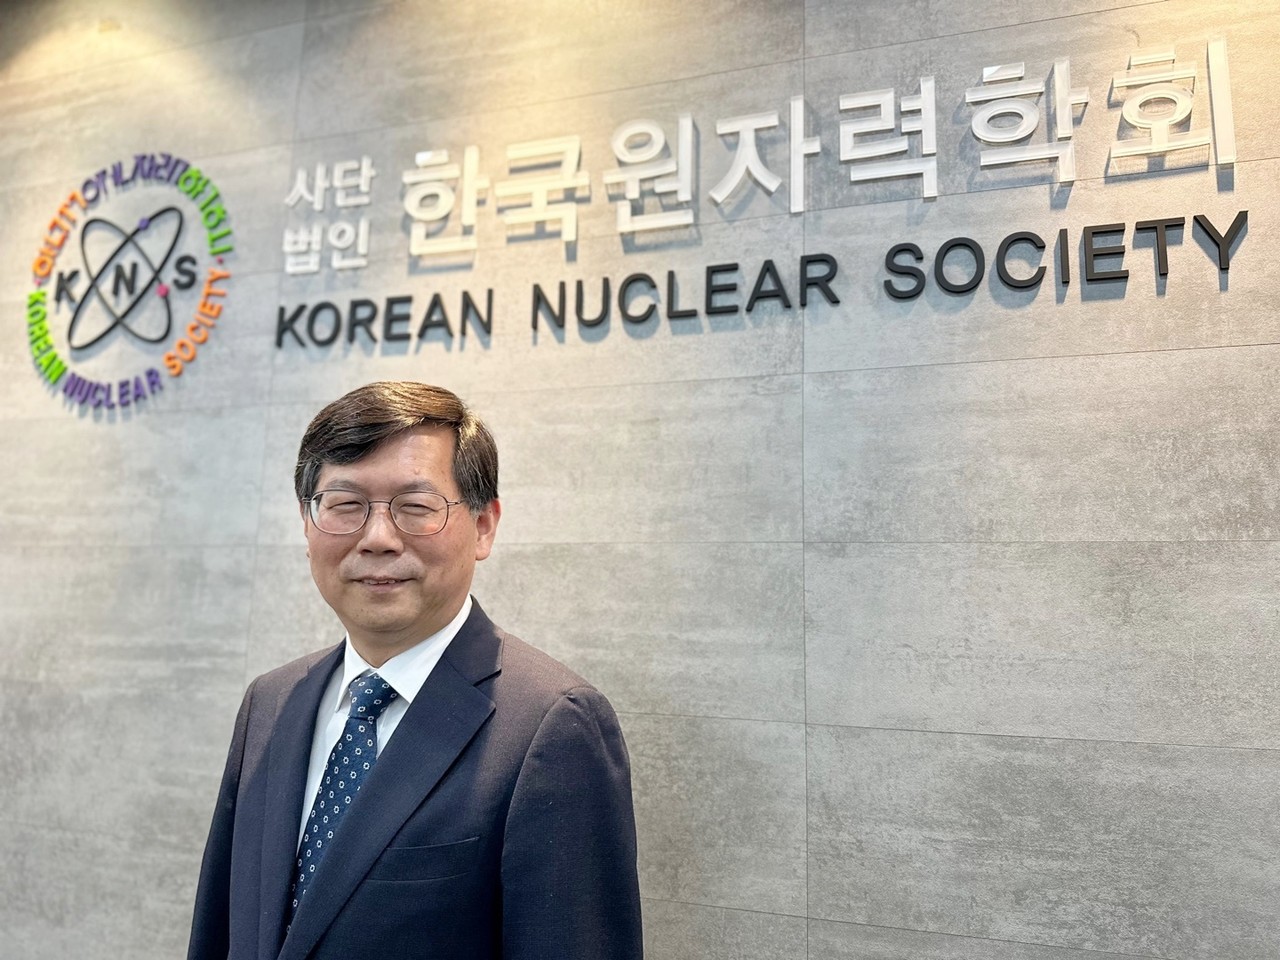 지난해 9월 1일, 제35대 한국원자력학회 학회장으로 취임한 백원필 박사. 그는 원자력안전을 전공했다. 임기는 1년이다. [사진=이유진 기자]